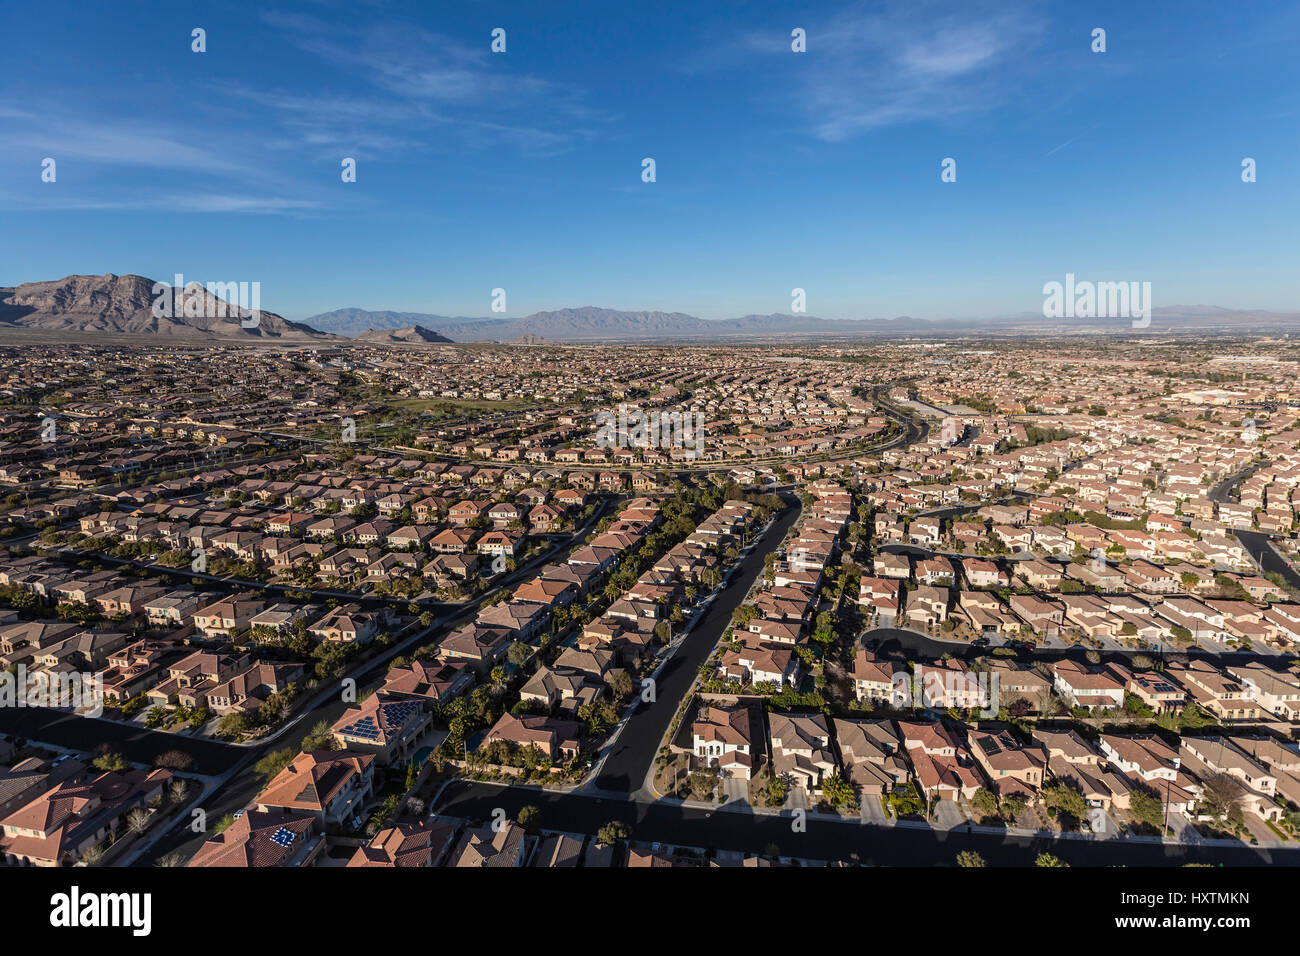 Vista aérea del barrio suburbano de Summerlin en Las Vegas, Nevada. Foto de stock